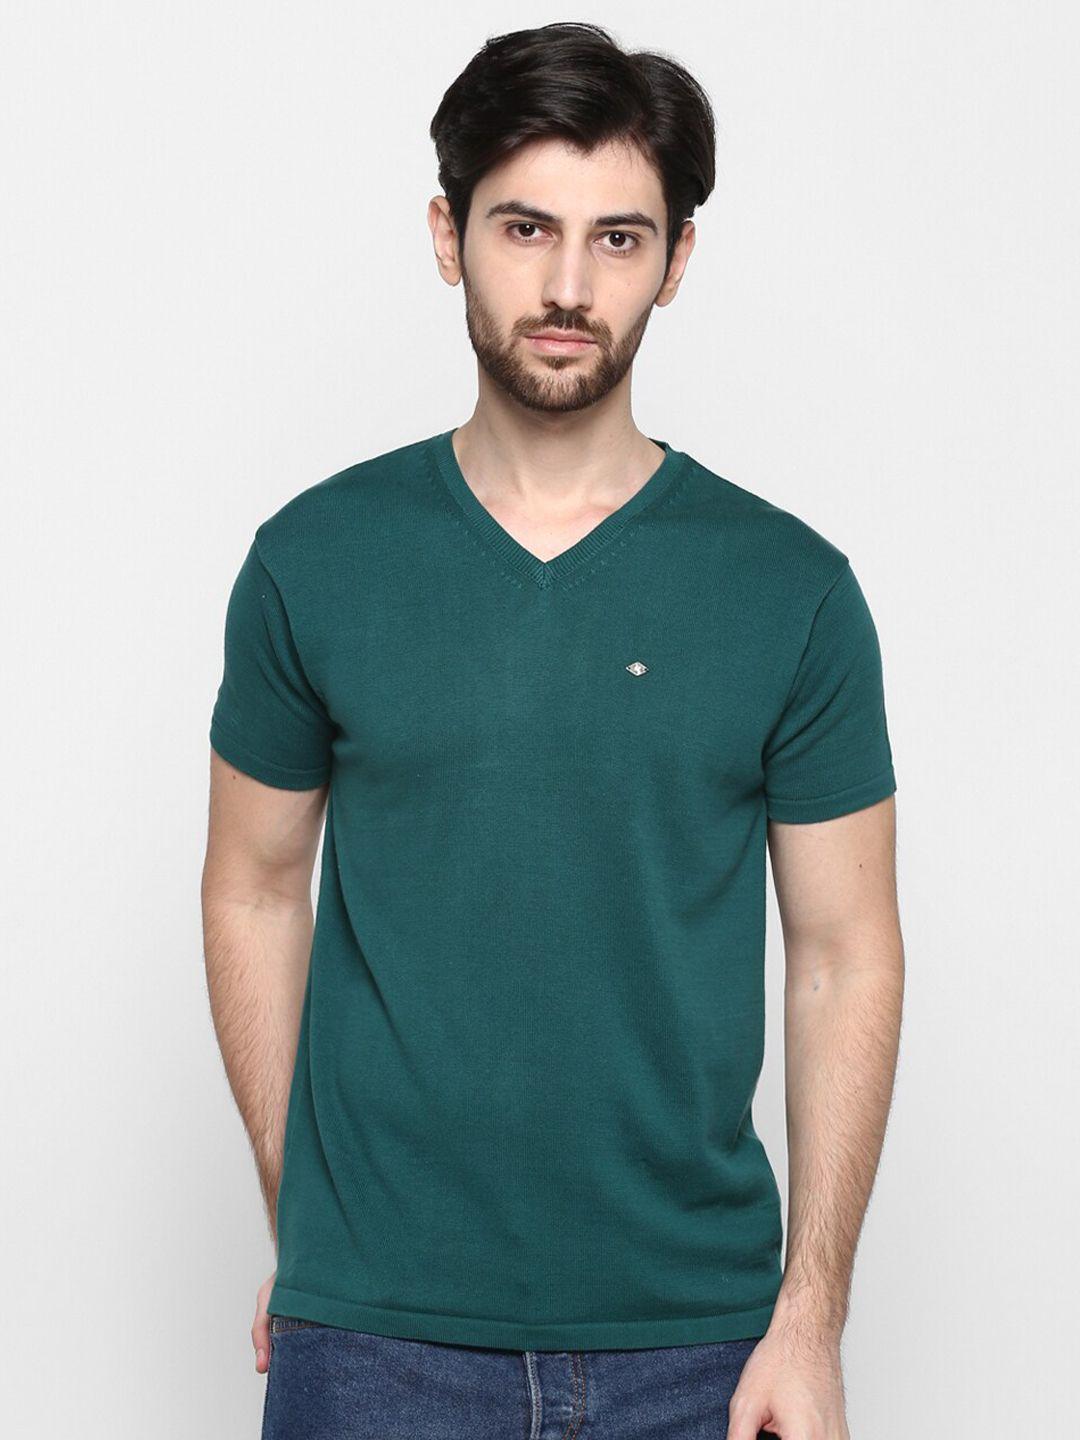 cantabil men green v-neck applique t-shirt